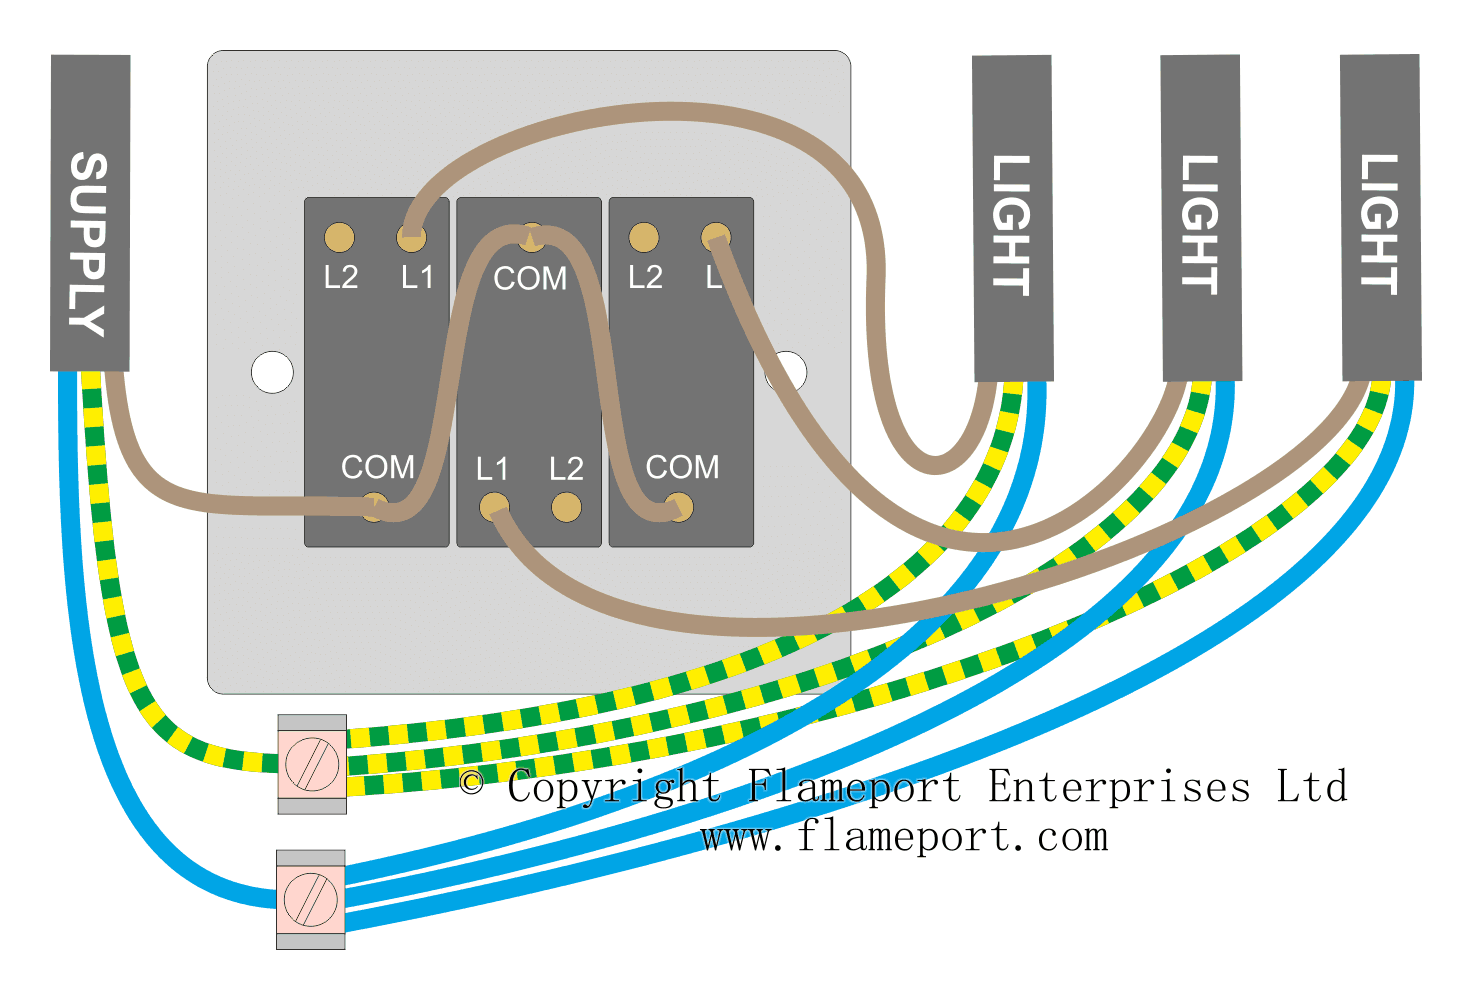 2 Way Light Switch Wiring Diagram Uk